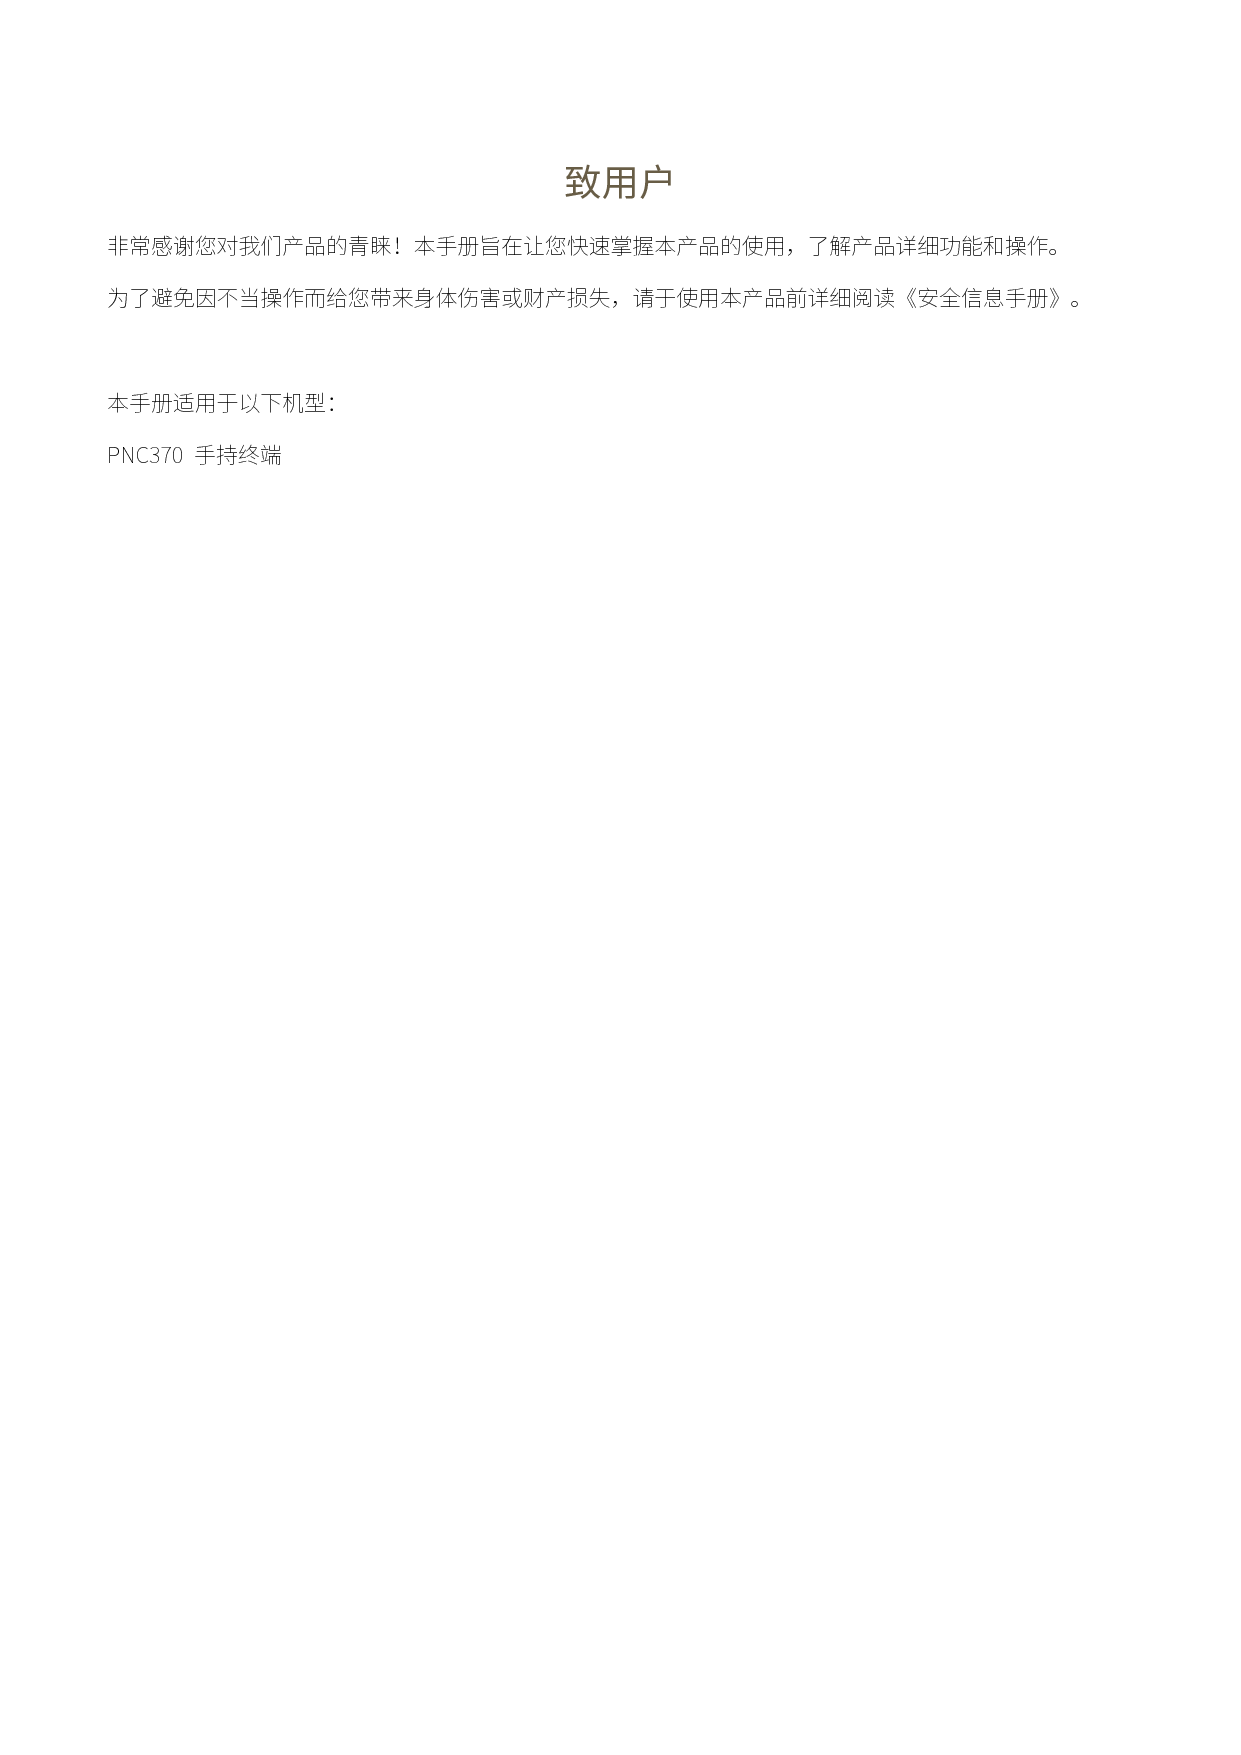 海能达 Hytera PNC370 使用说明书 第1页